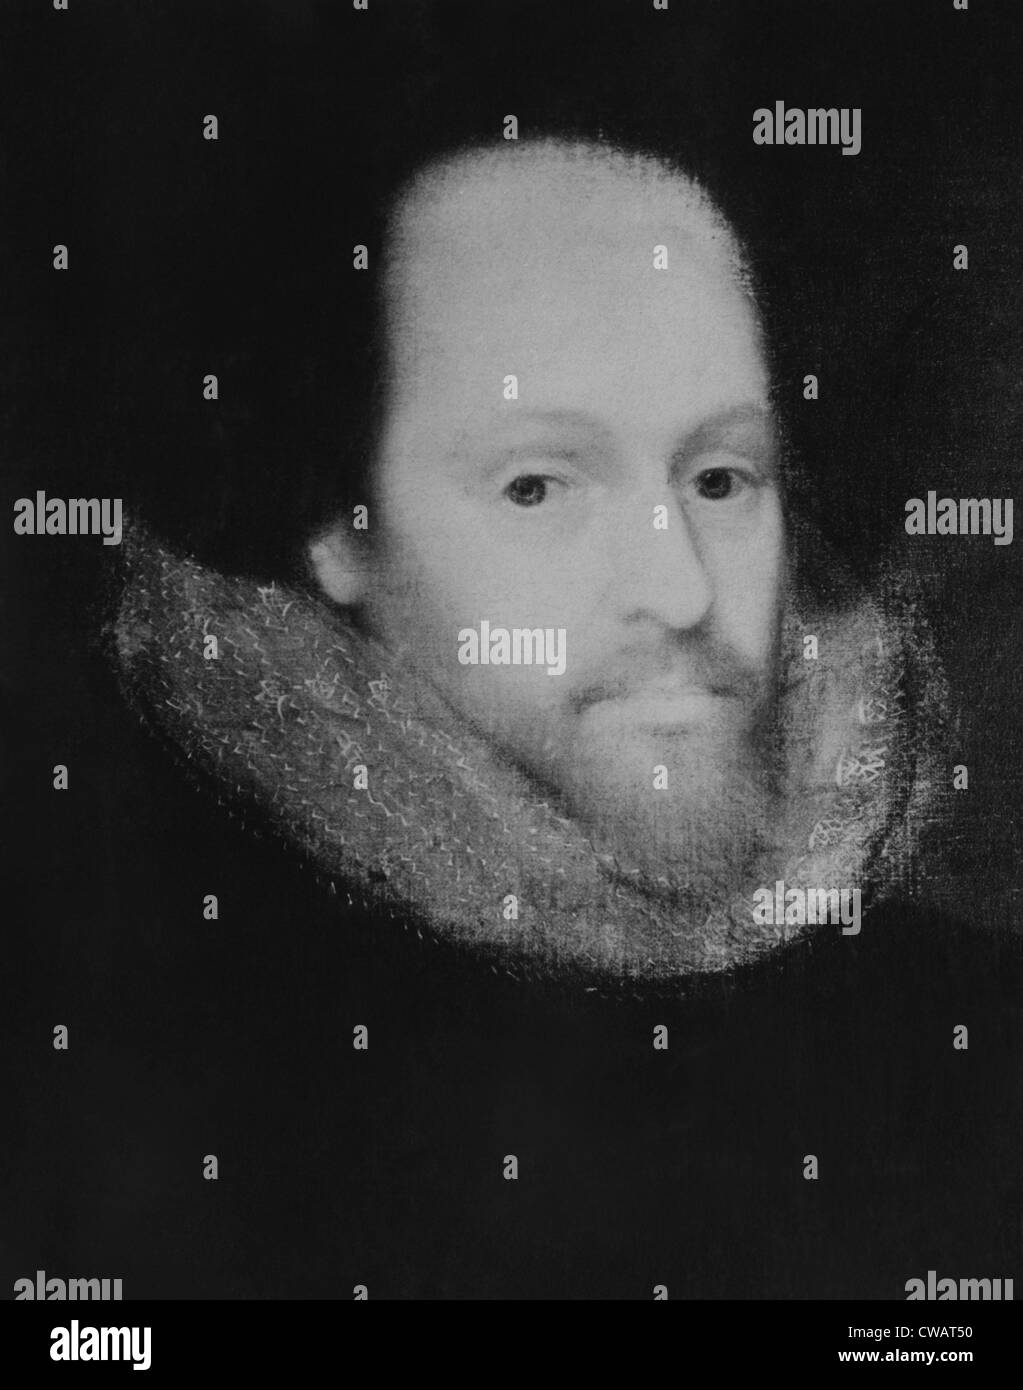 William Shakespeare (1564-1616), englischer Dichter und Dramatiker. Höflichkeit: CSU Archive/Everett Collection Stockfoto